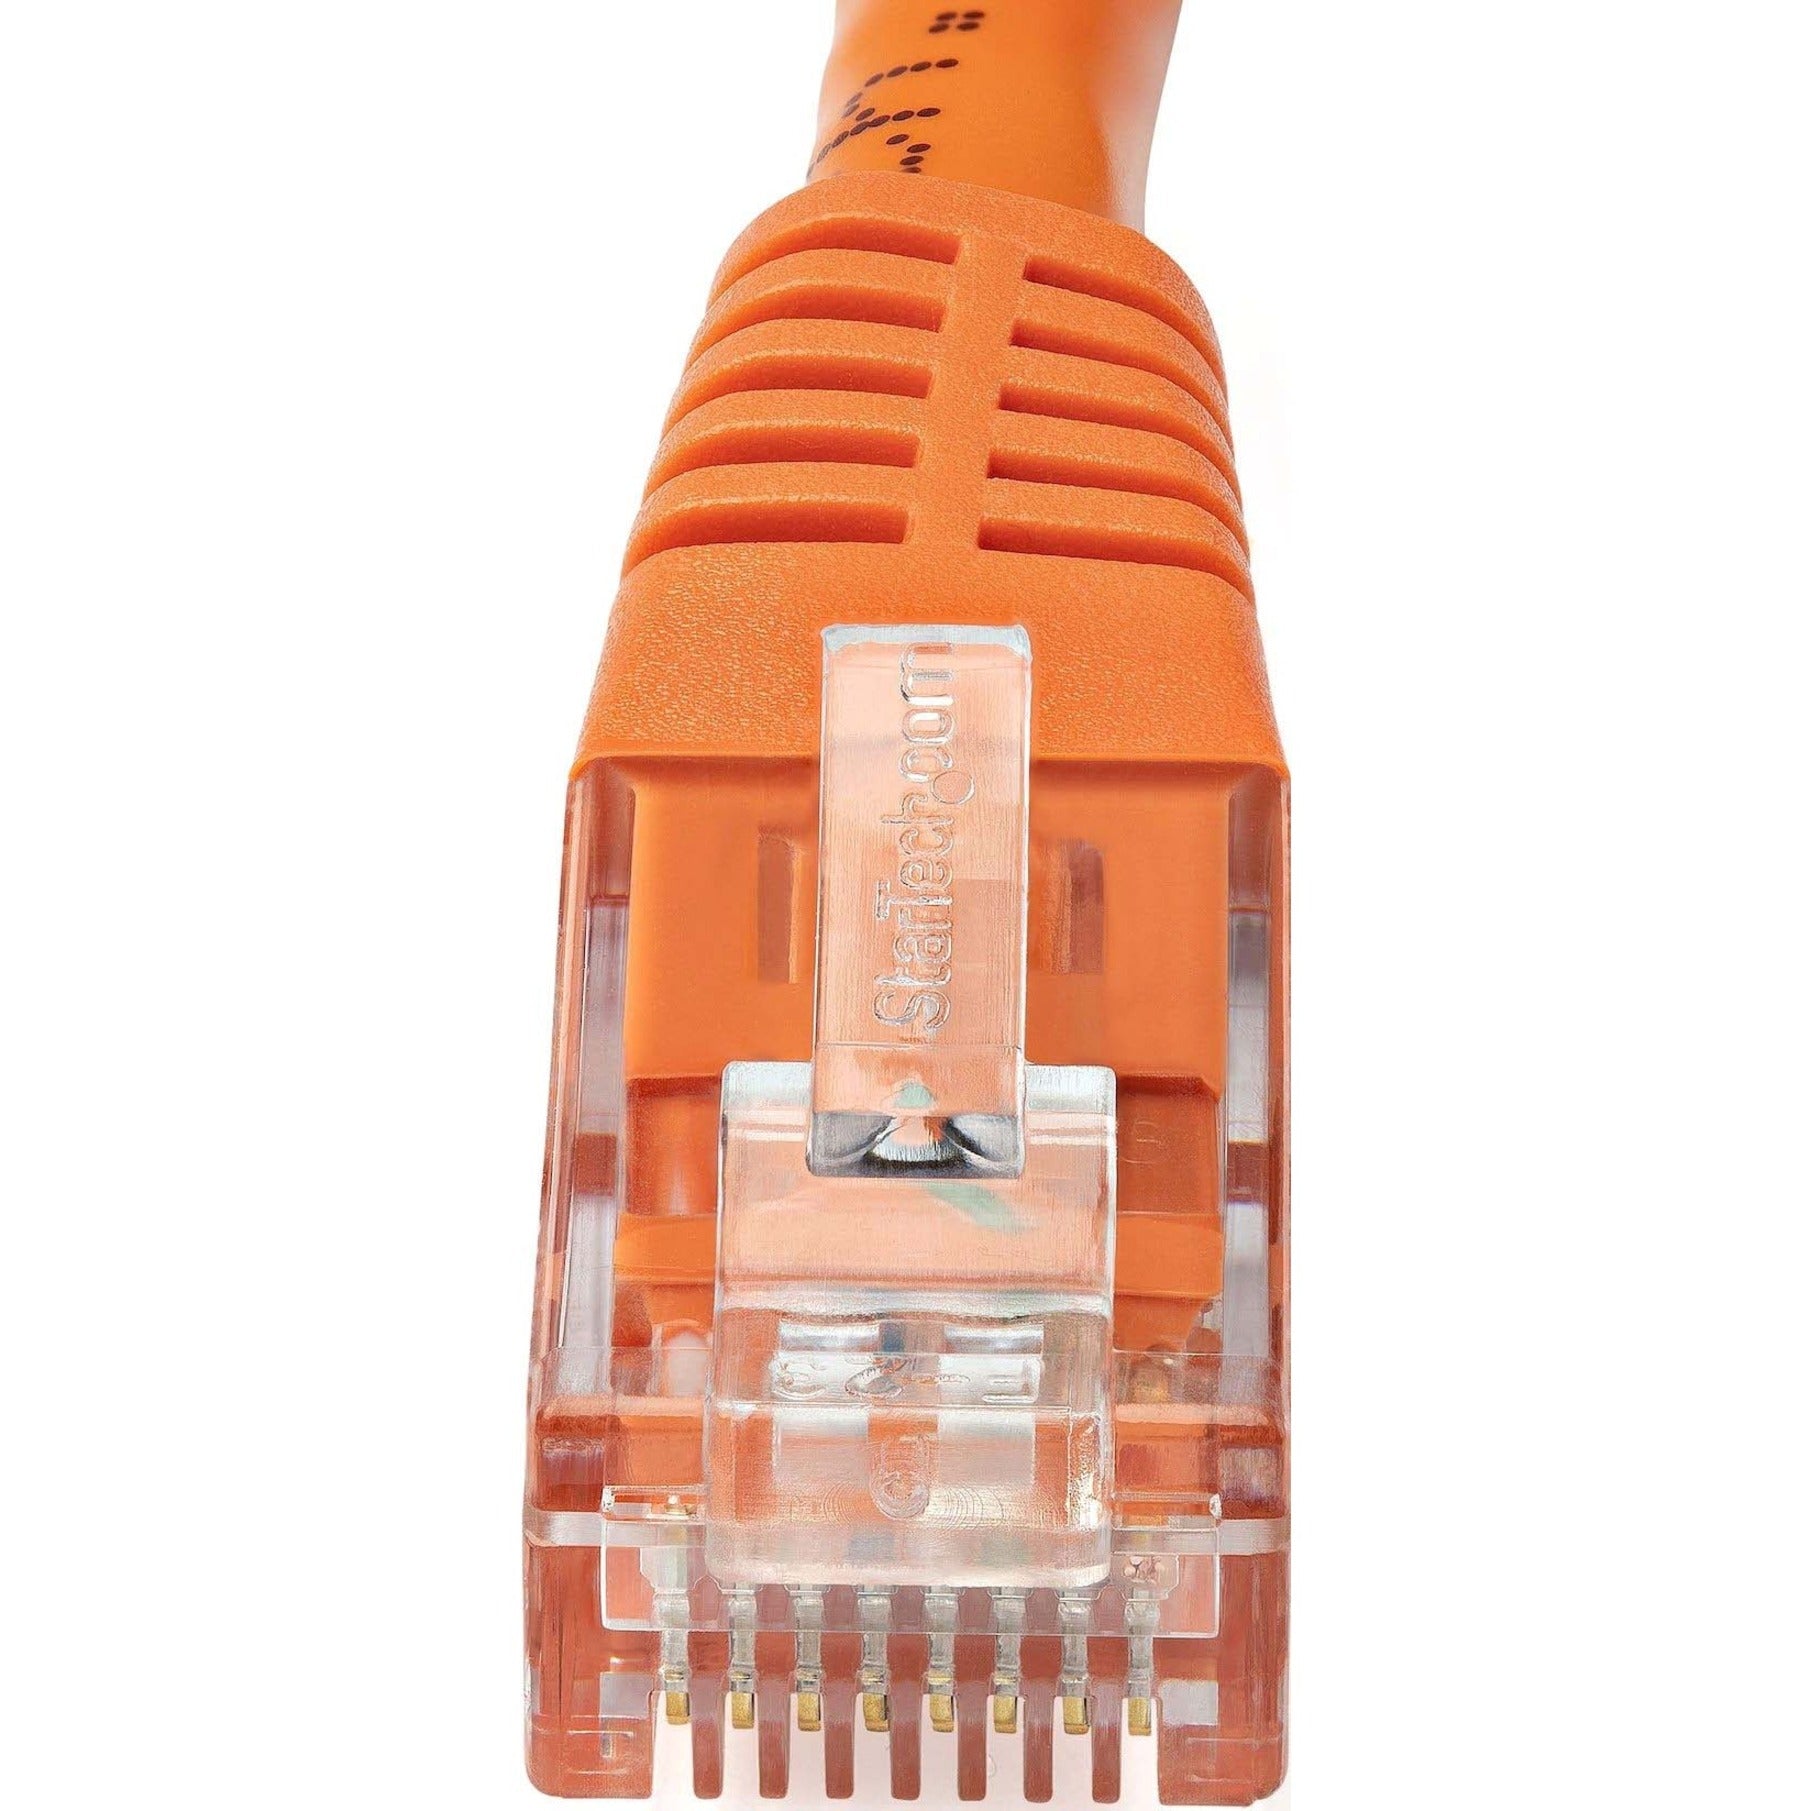 StarTech.com C6PATCH20OR 20ft Orange Cat6 UTP Patch Cable ETL Verified, Gigabit Ethernet Network Cord